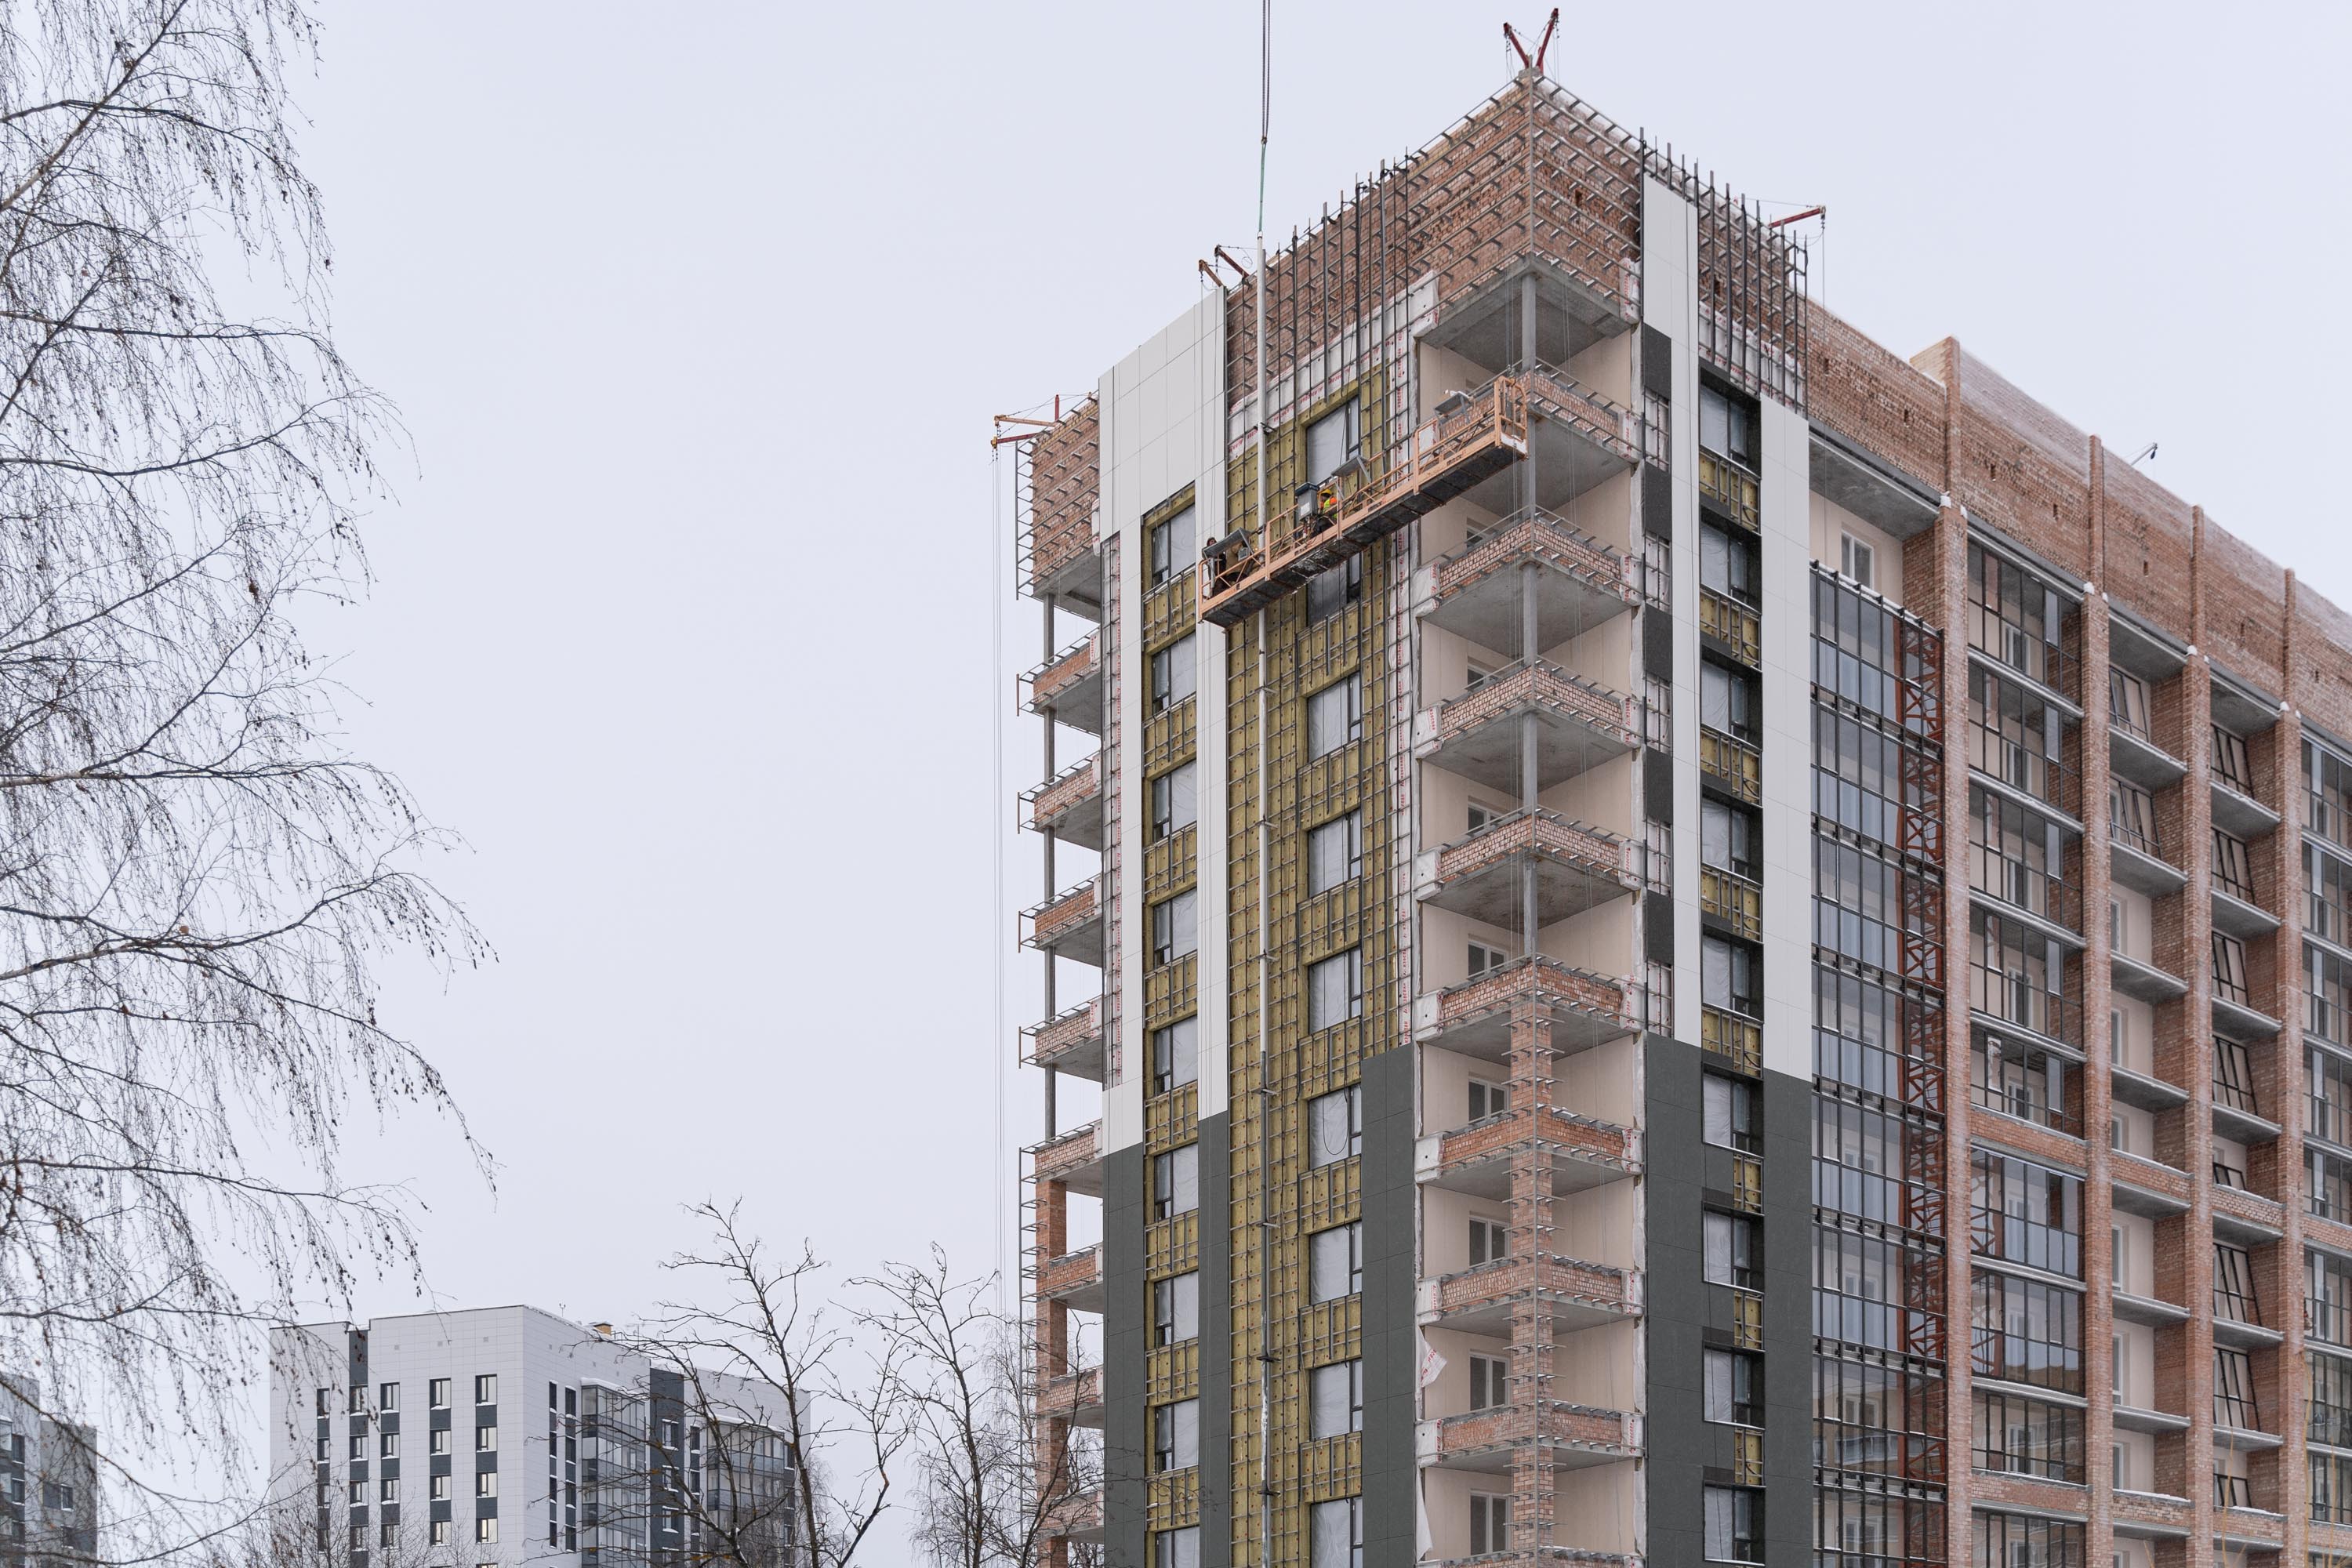 Дешевле не будет: какие перспективы у рынка жилья в Коми в 2022 году 